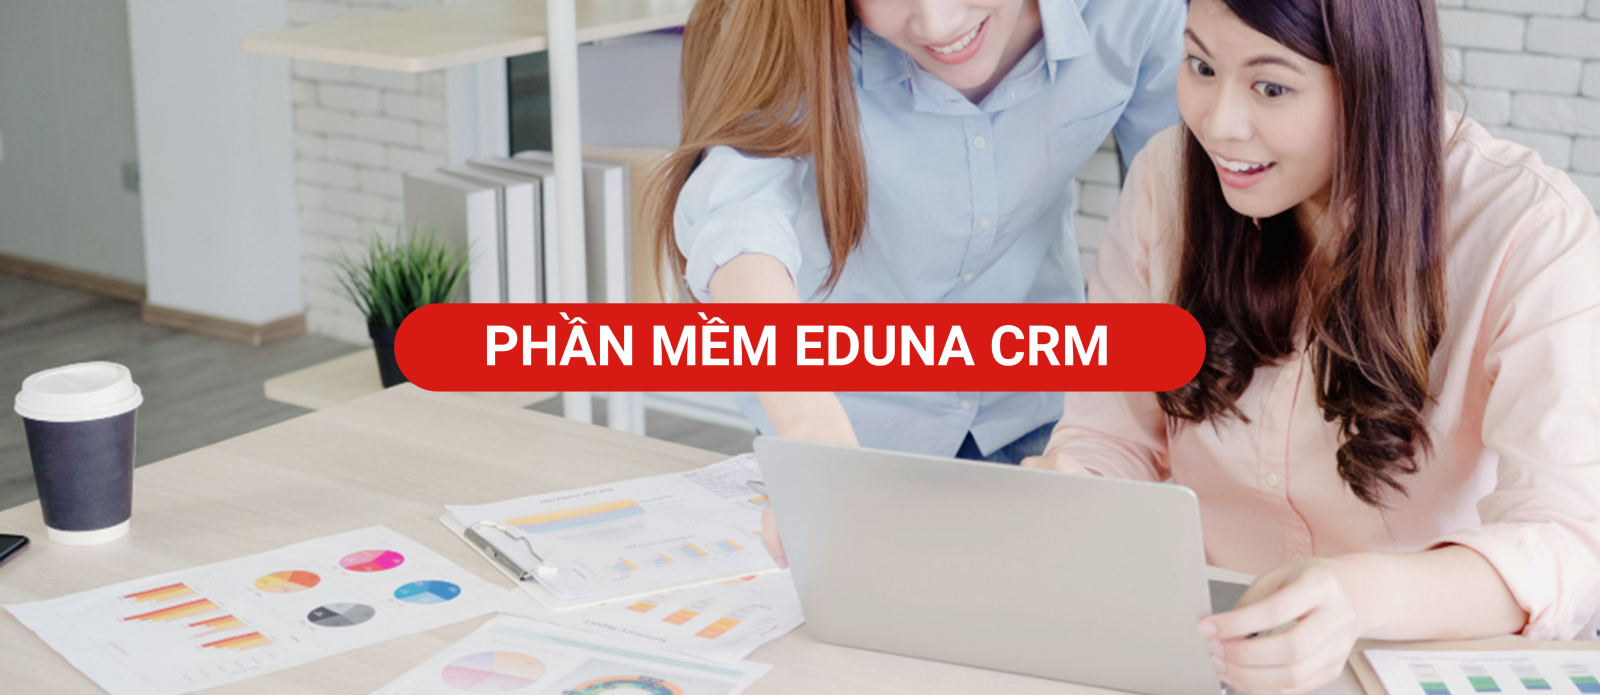 https://eduna.com.vn/PHAN-MEM-EDUNA-CRM_880.html